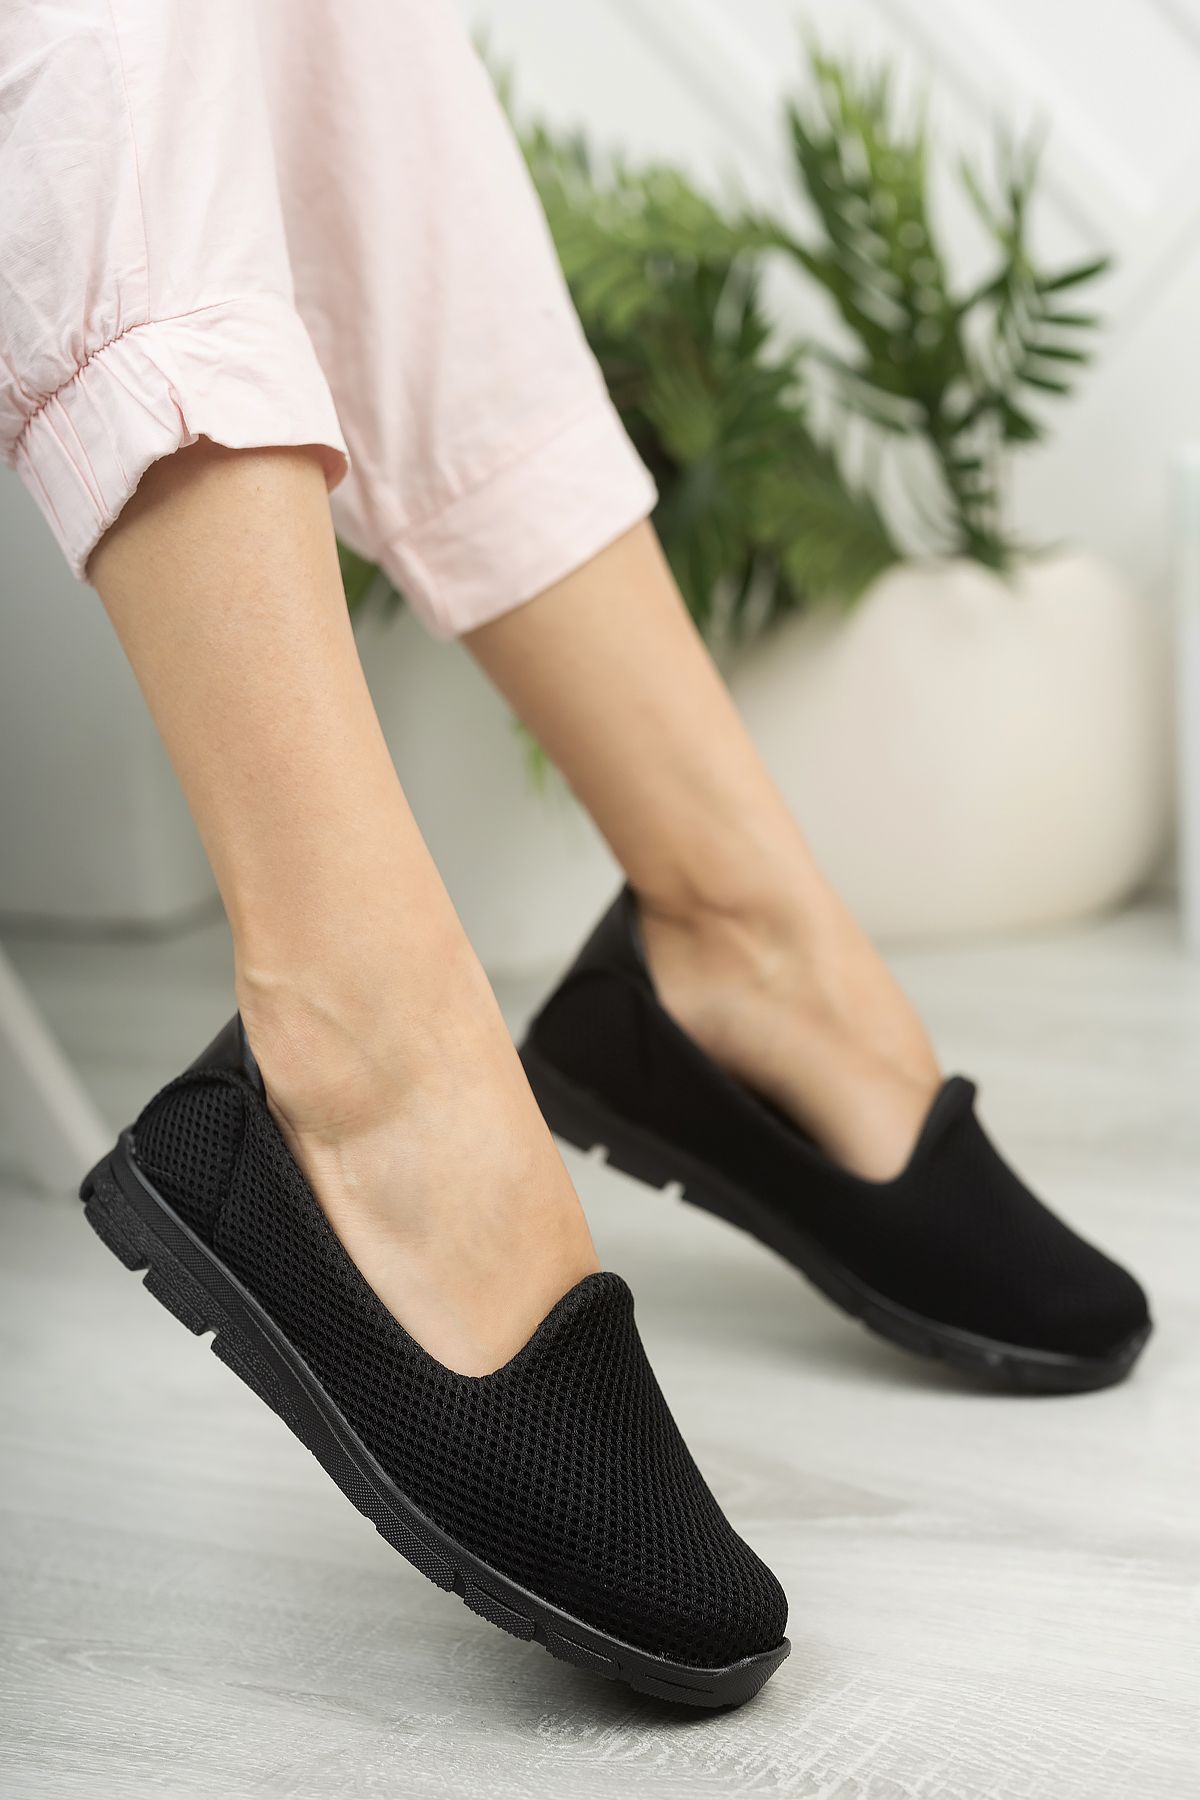 StWenn Kadın Spor Babet Yürüyüş Ayakkabısı Hafif Ortopedik Taban Siyah